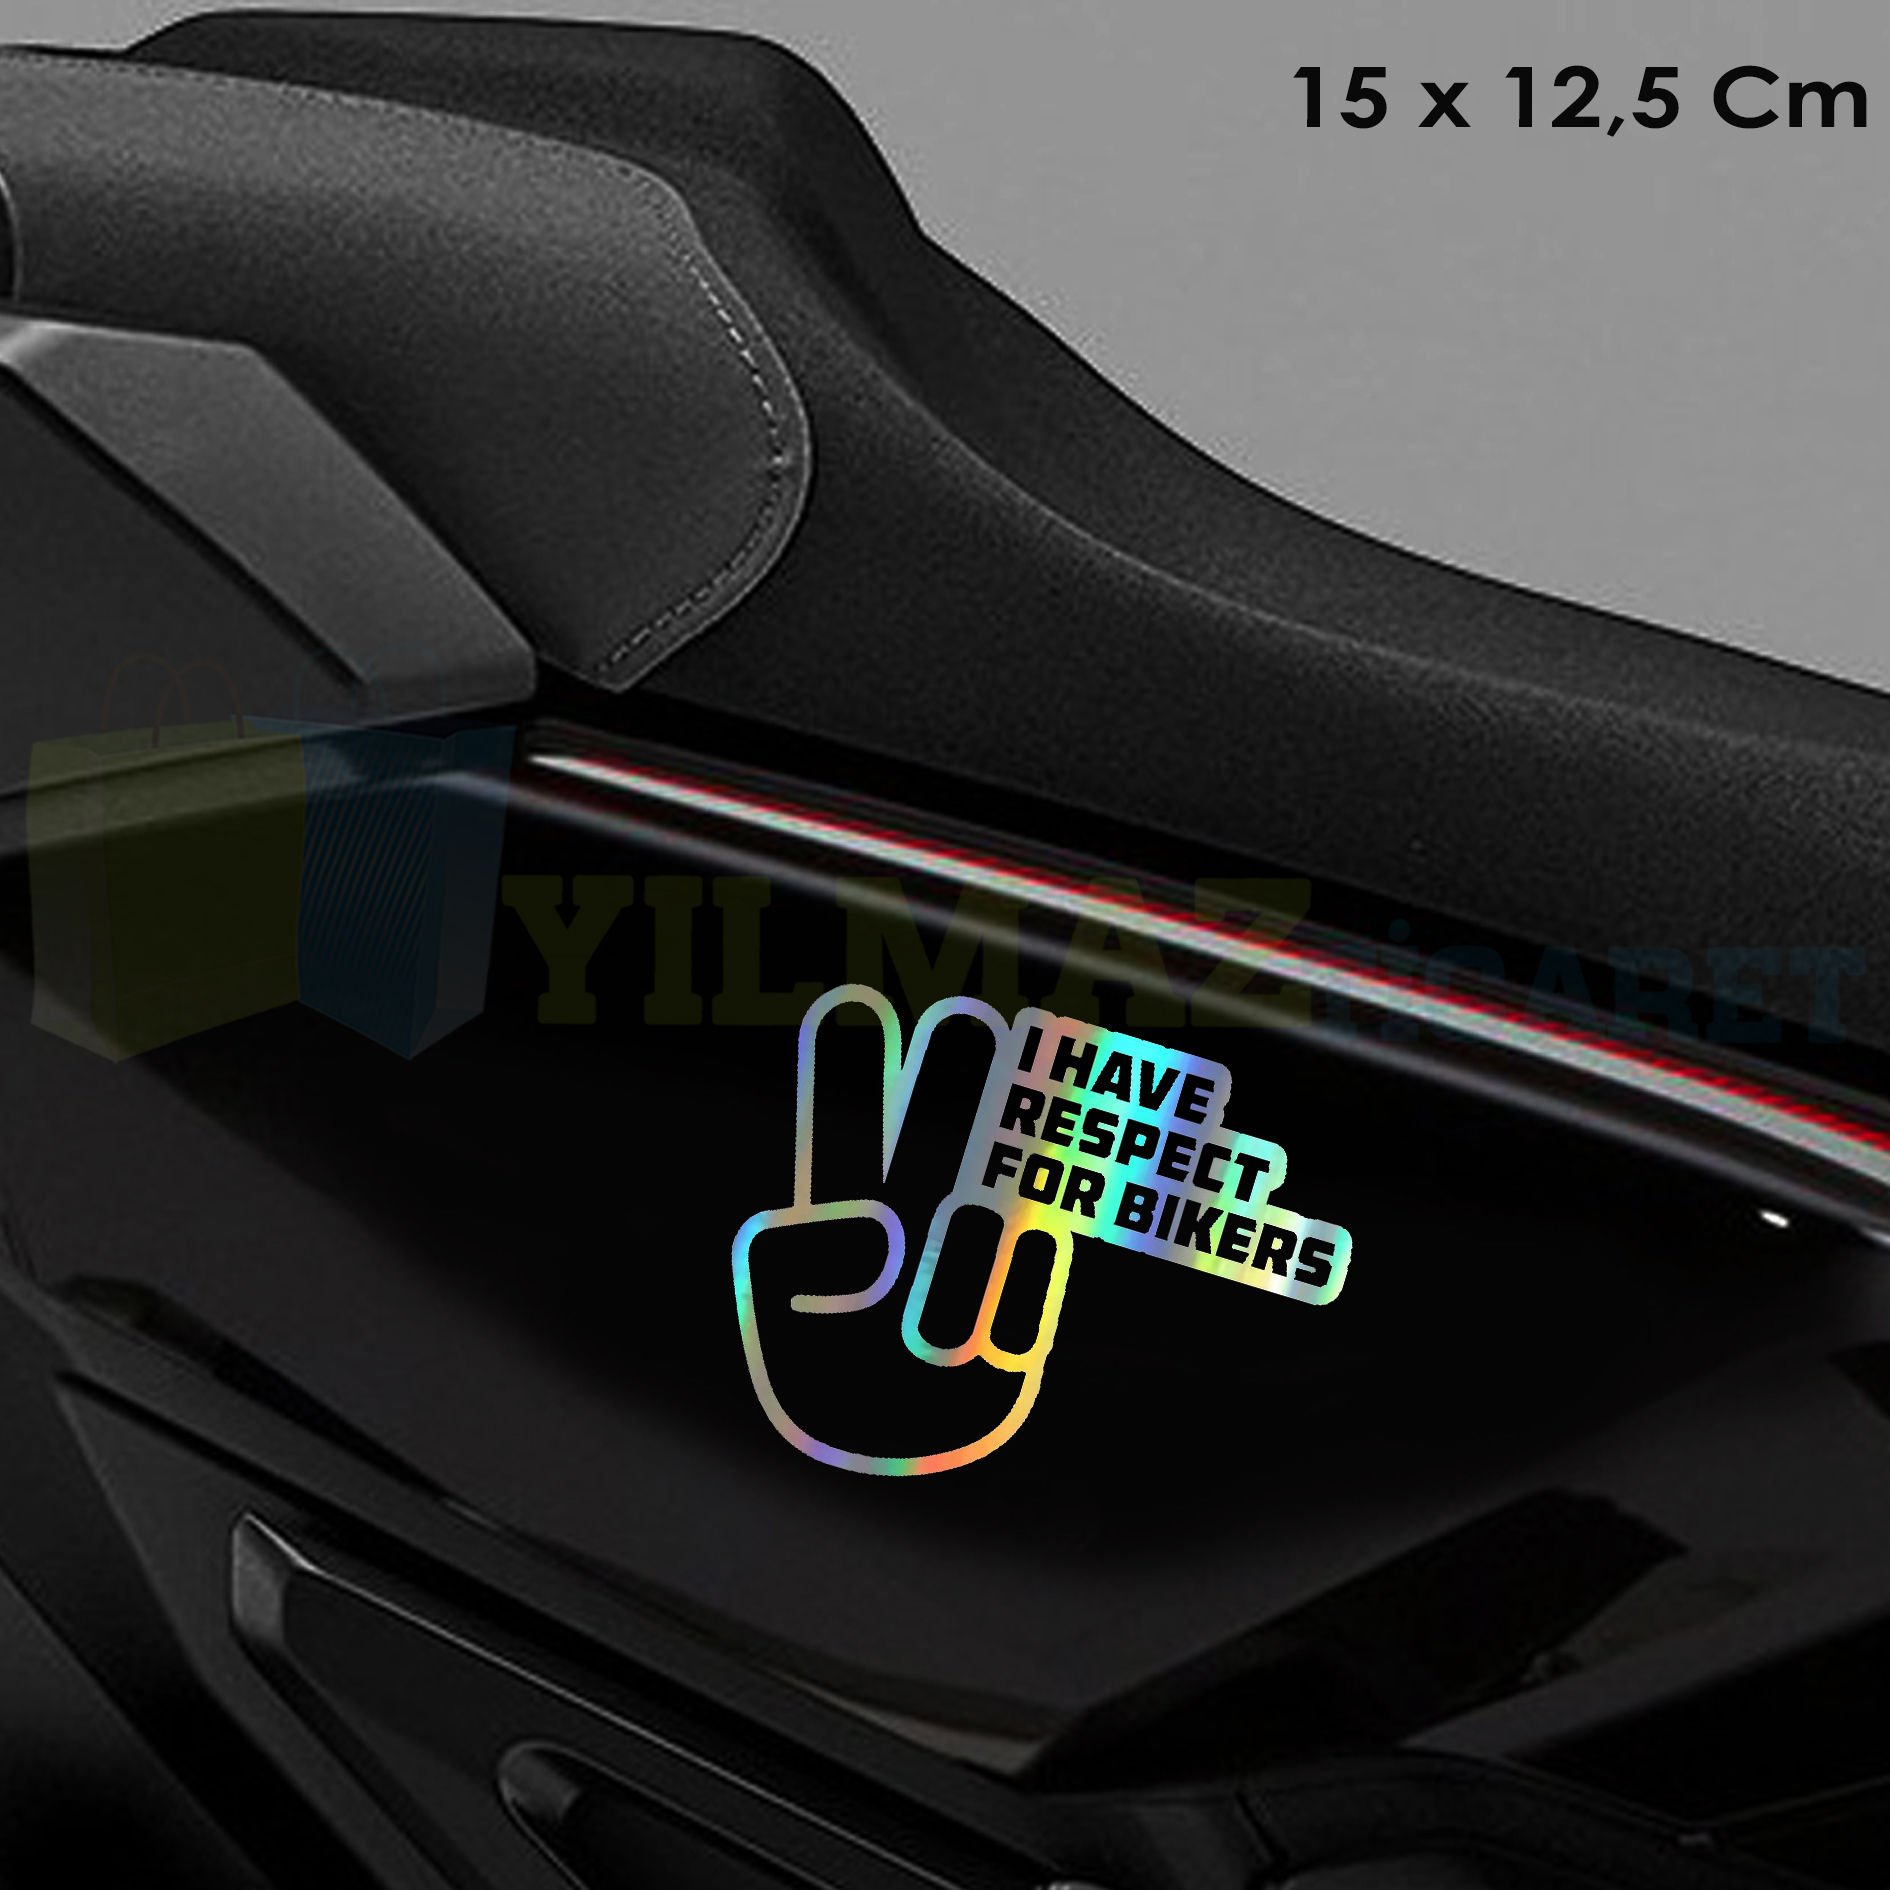 Motorcuya Saygım Var Hologram Motosiklet Araba Oto Sticker Etiket Renkli Yapıştırma 15 x 12.5 Cm